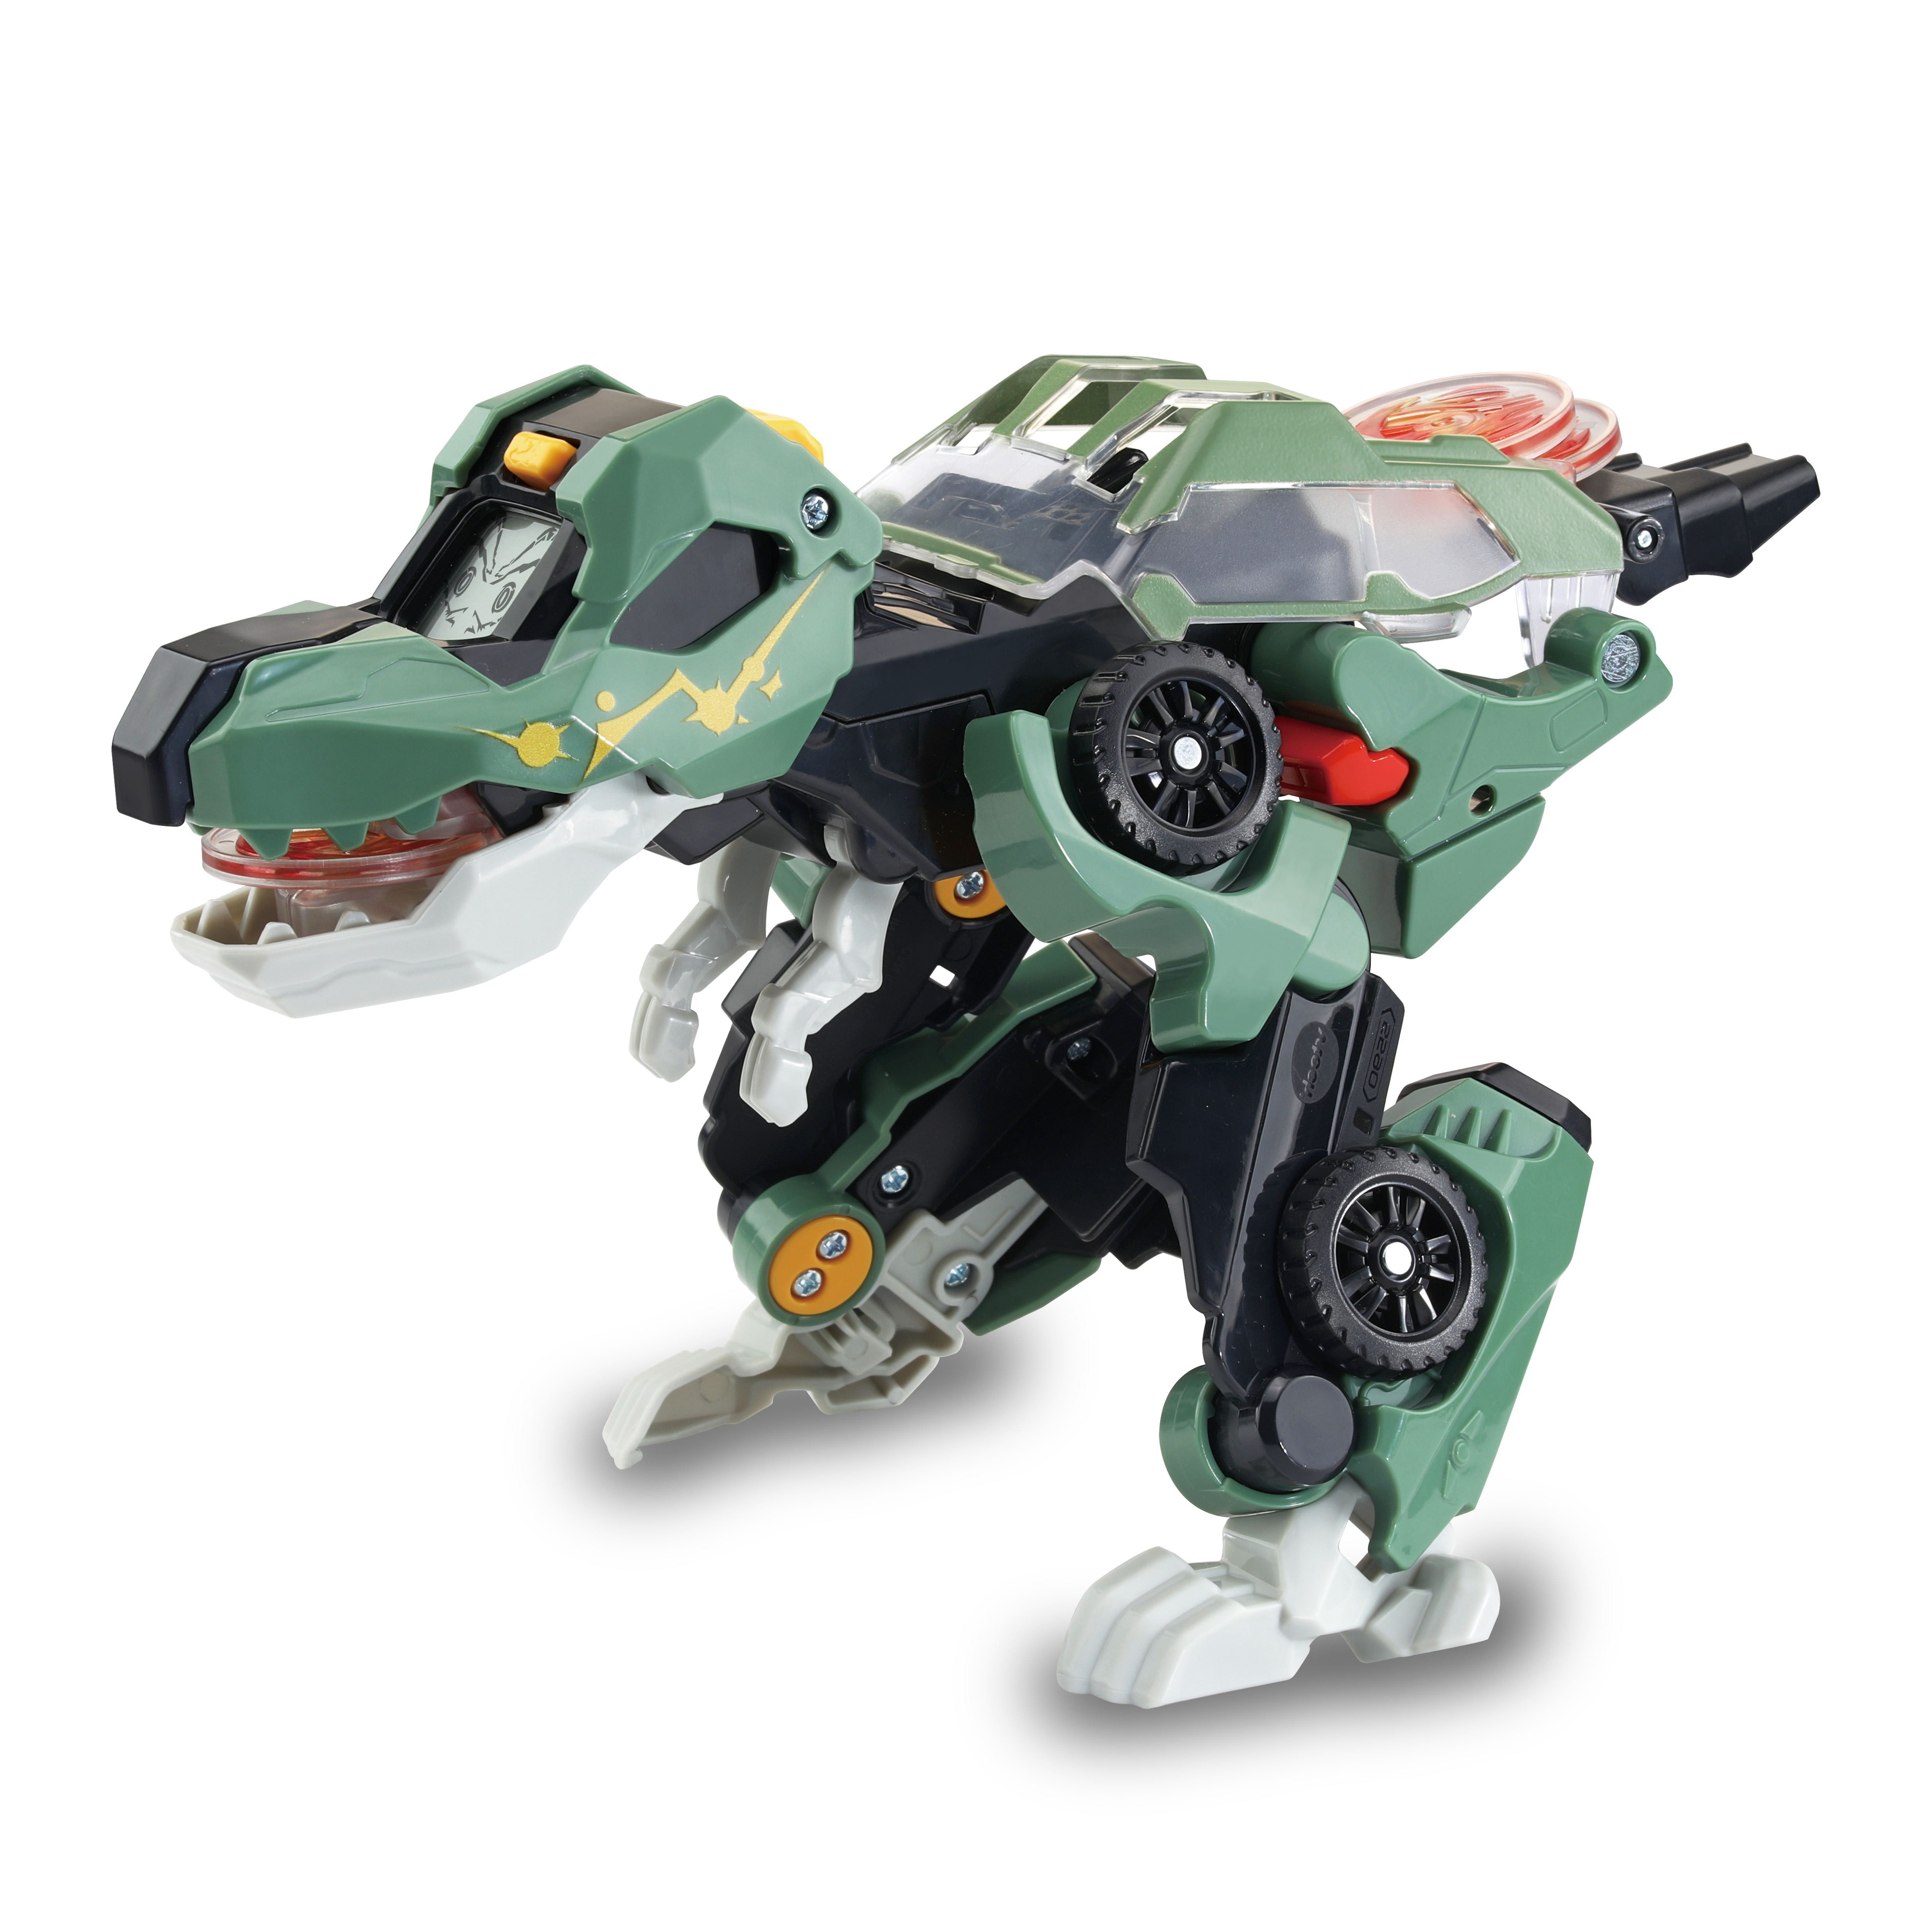 Go Grün Launcher-T-Rex VTECH Dinos Switch & - Spielzeugauto,